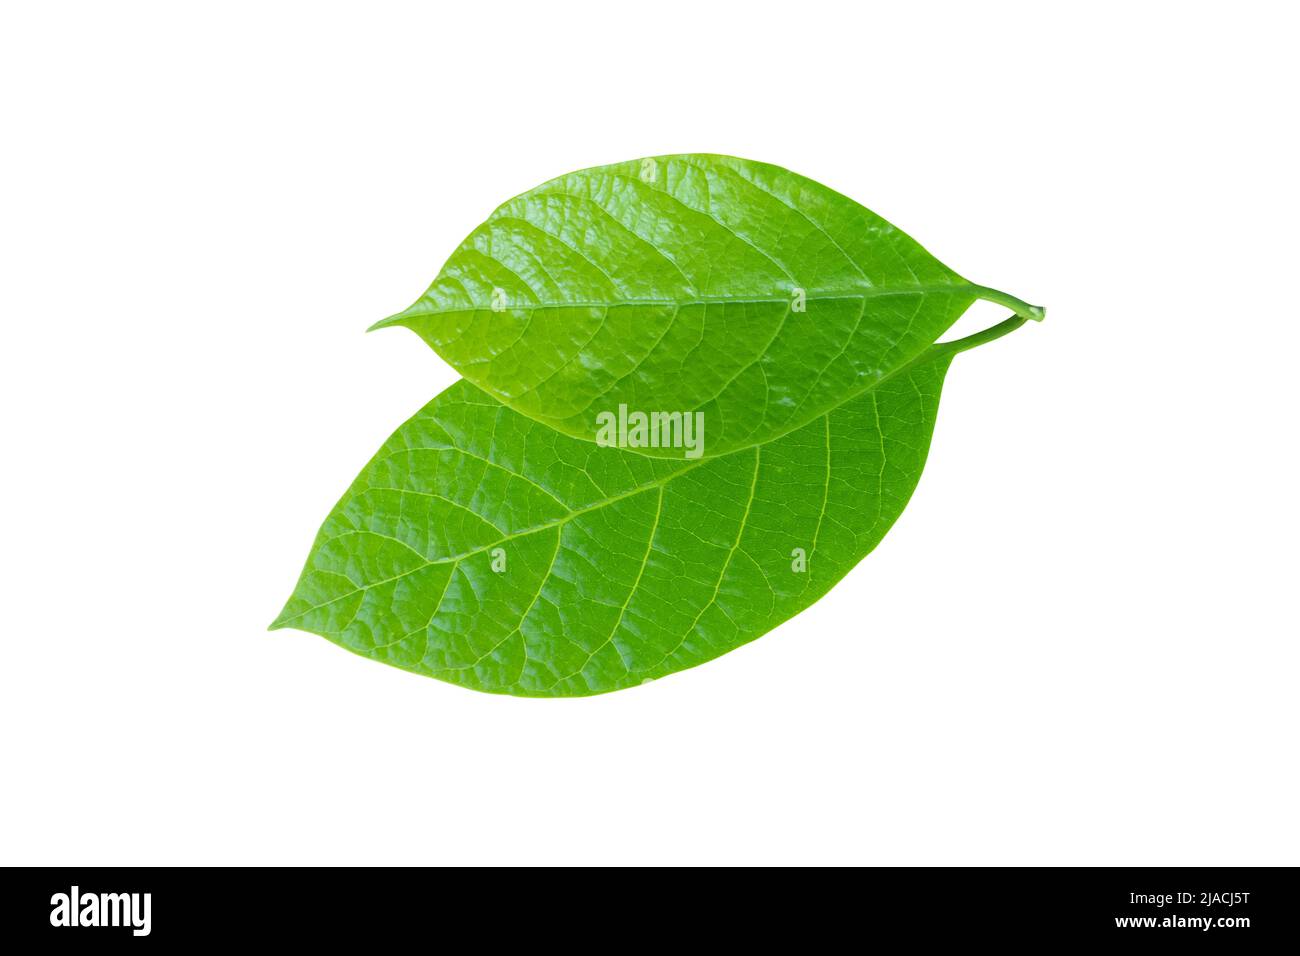 Avocado or alligator pear or Persea americana tree leaf closeup isolated on white. Green foliage. Stock Photo